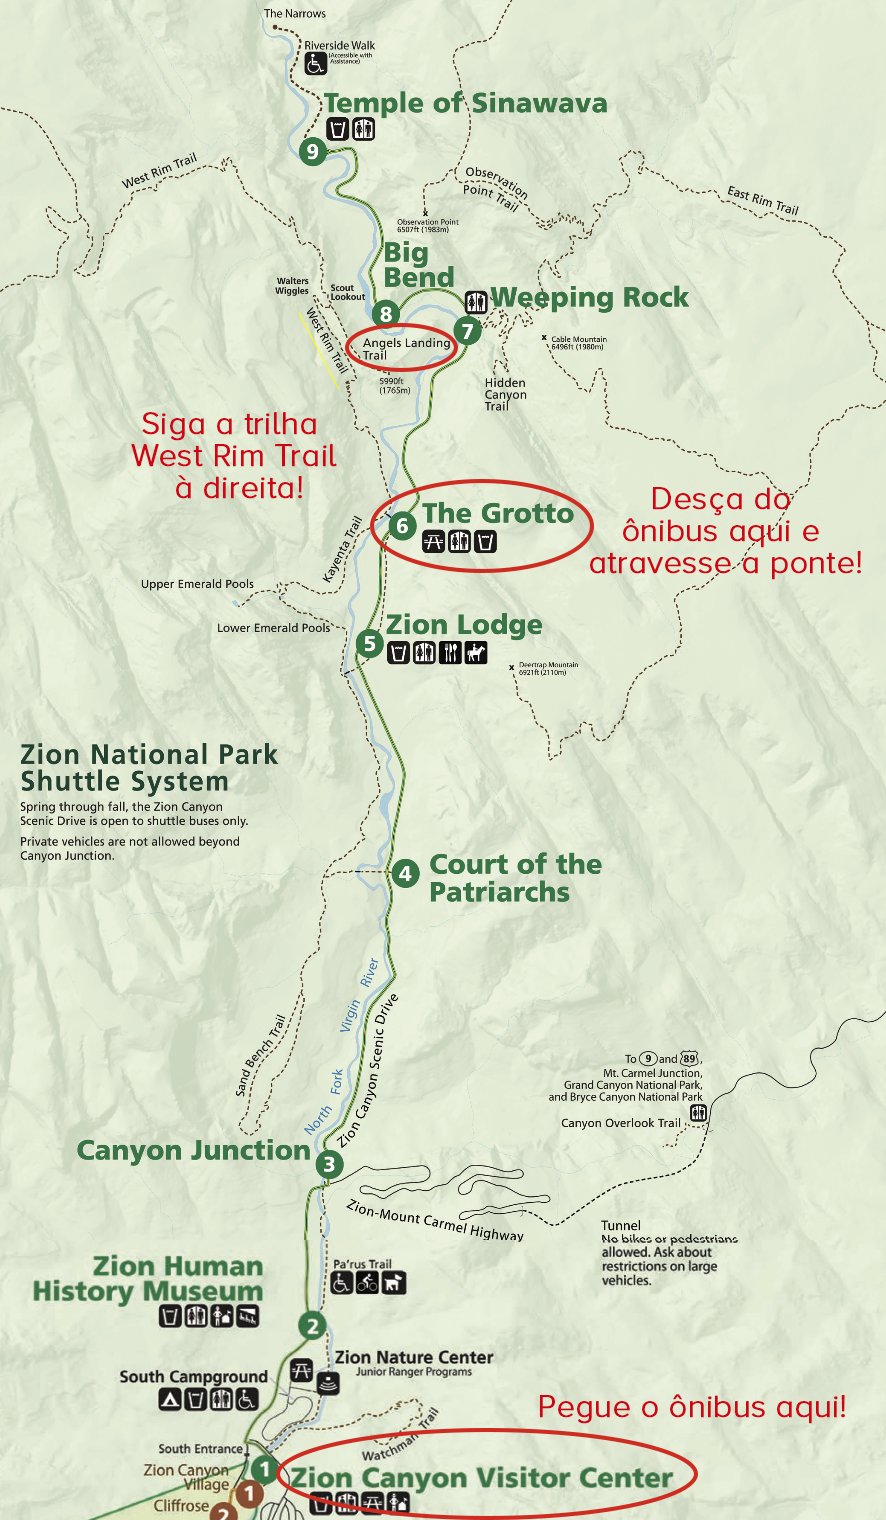 Mapa indicando as paradas de ônibus e o inicio da trilha Angles Landing